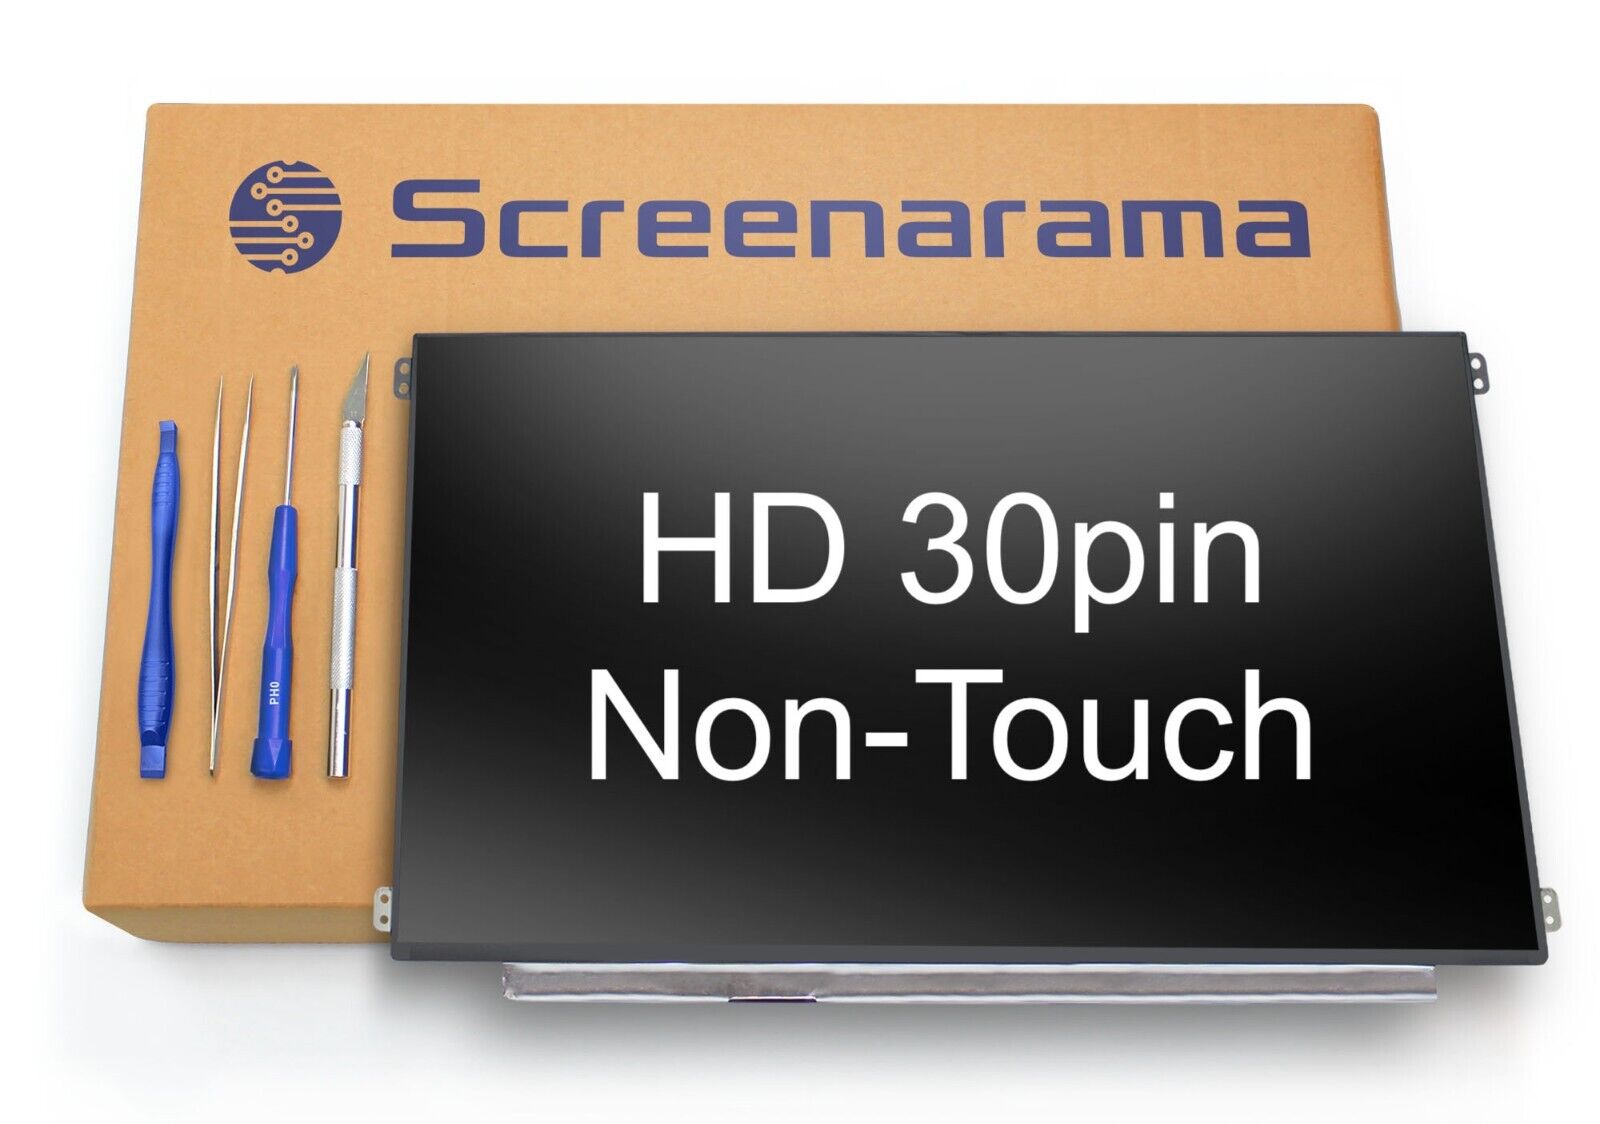 Dell Chromebook 11 3100 P29T P29T001 HD 30pin LED LCD Screen SCREENARAMA * FAST